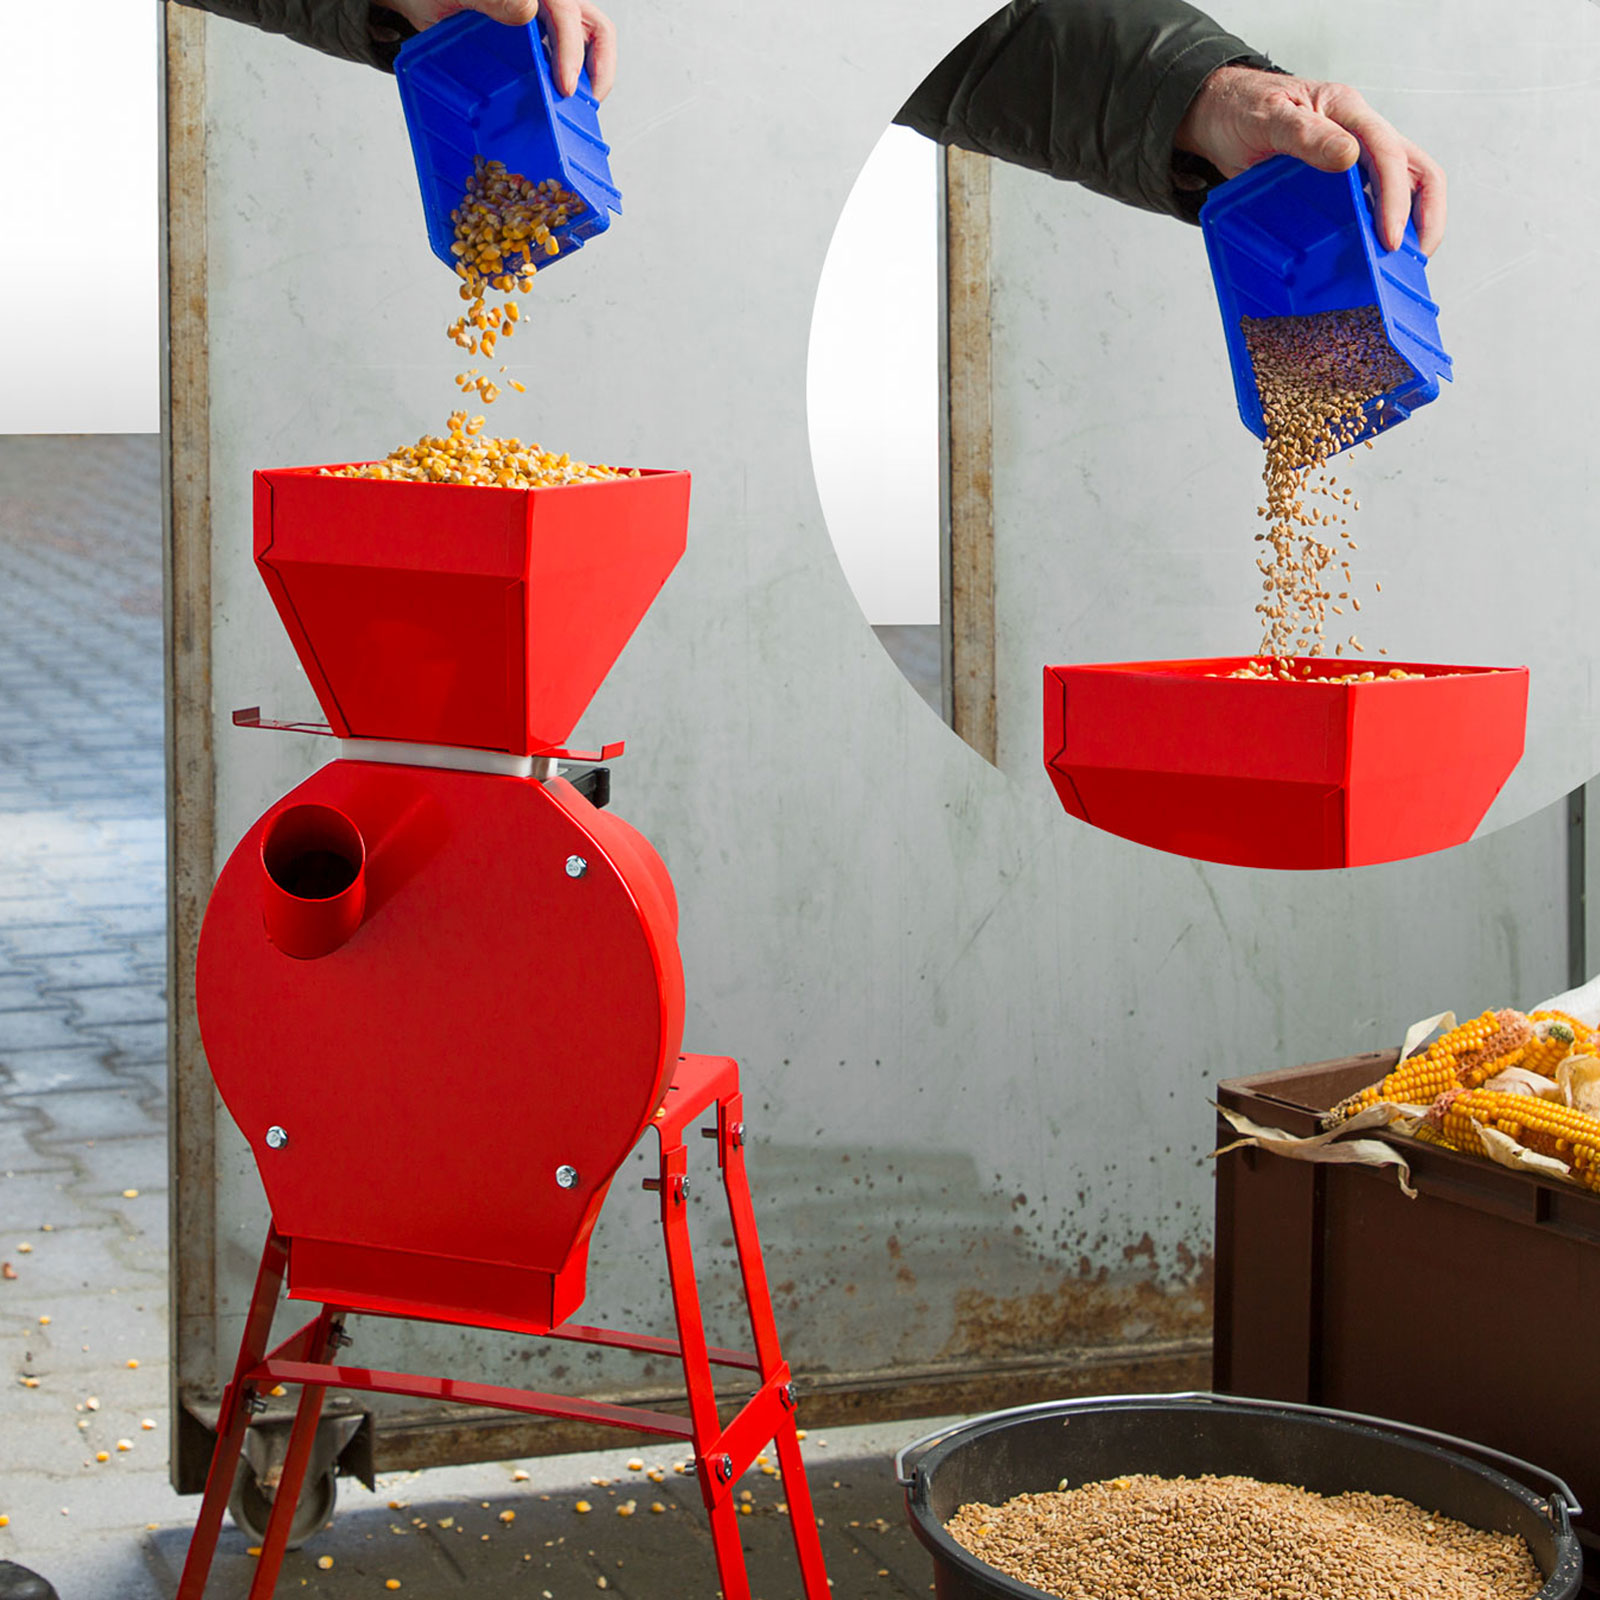 CNCEST Mulino elettrico per il grano, Macinino elettrico per cereali